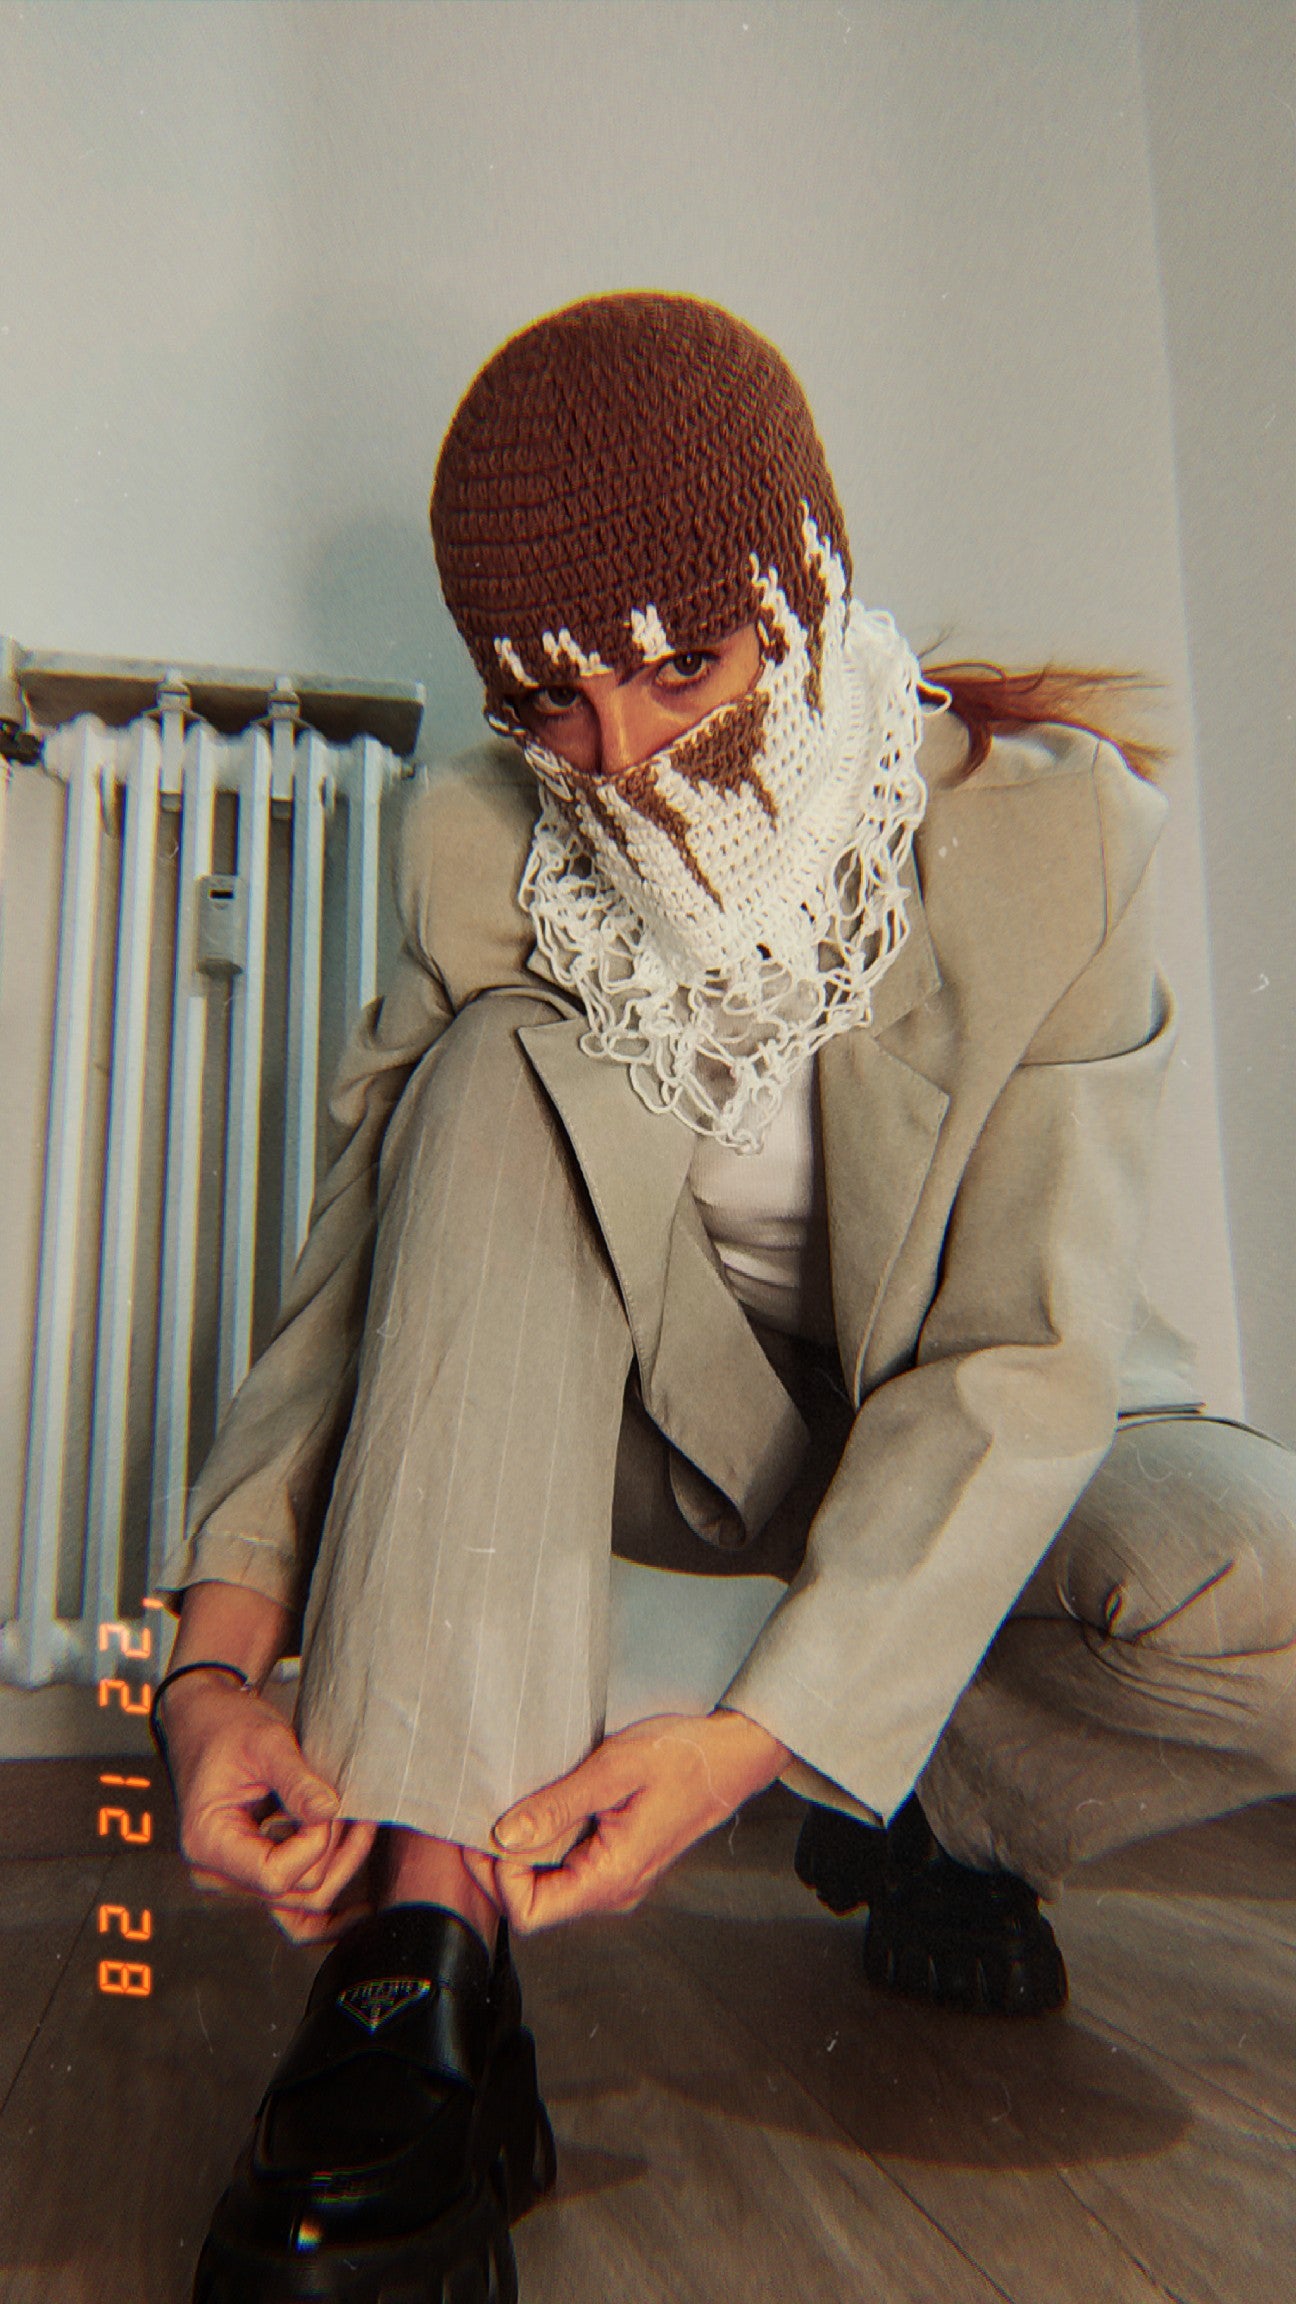 https://www.markuscrochet.fr/cdn/shop/files/Cagoule-design-chic-moderne-crochet-main-femme-homme.jpg?v=1694267630&width=1445